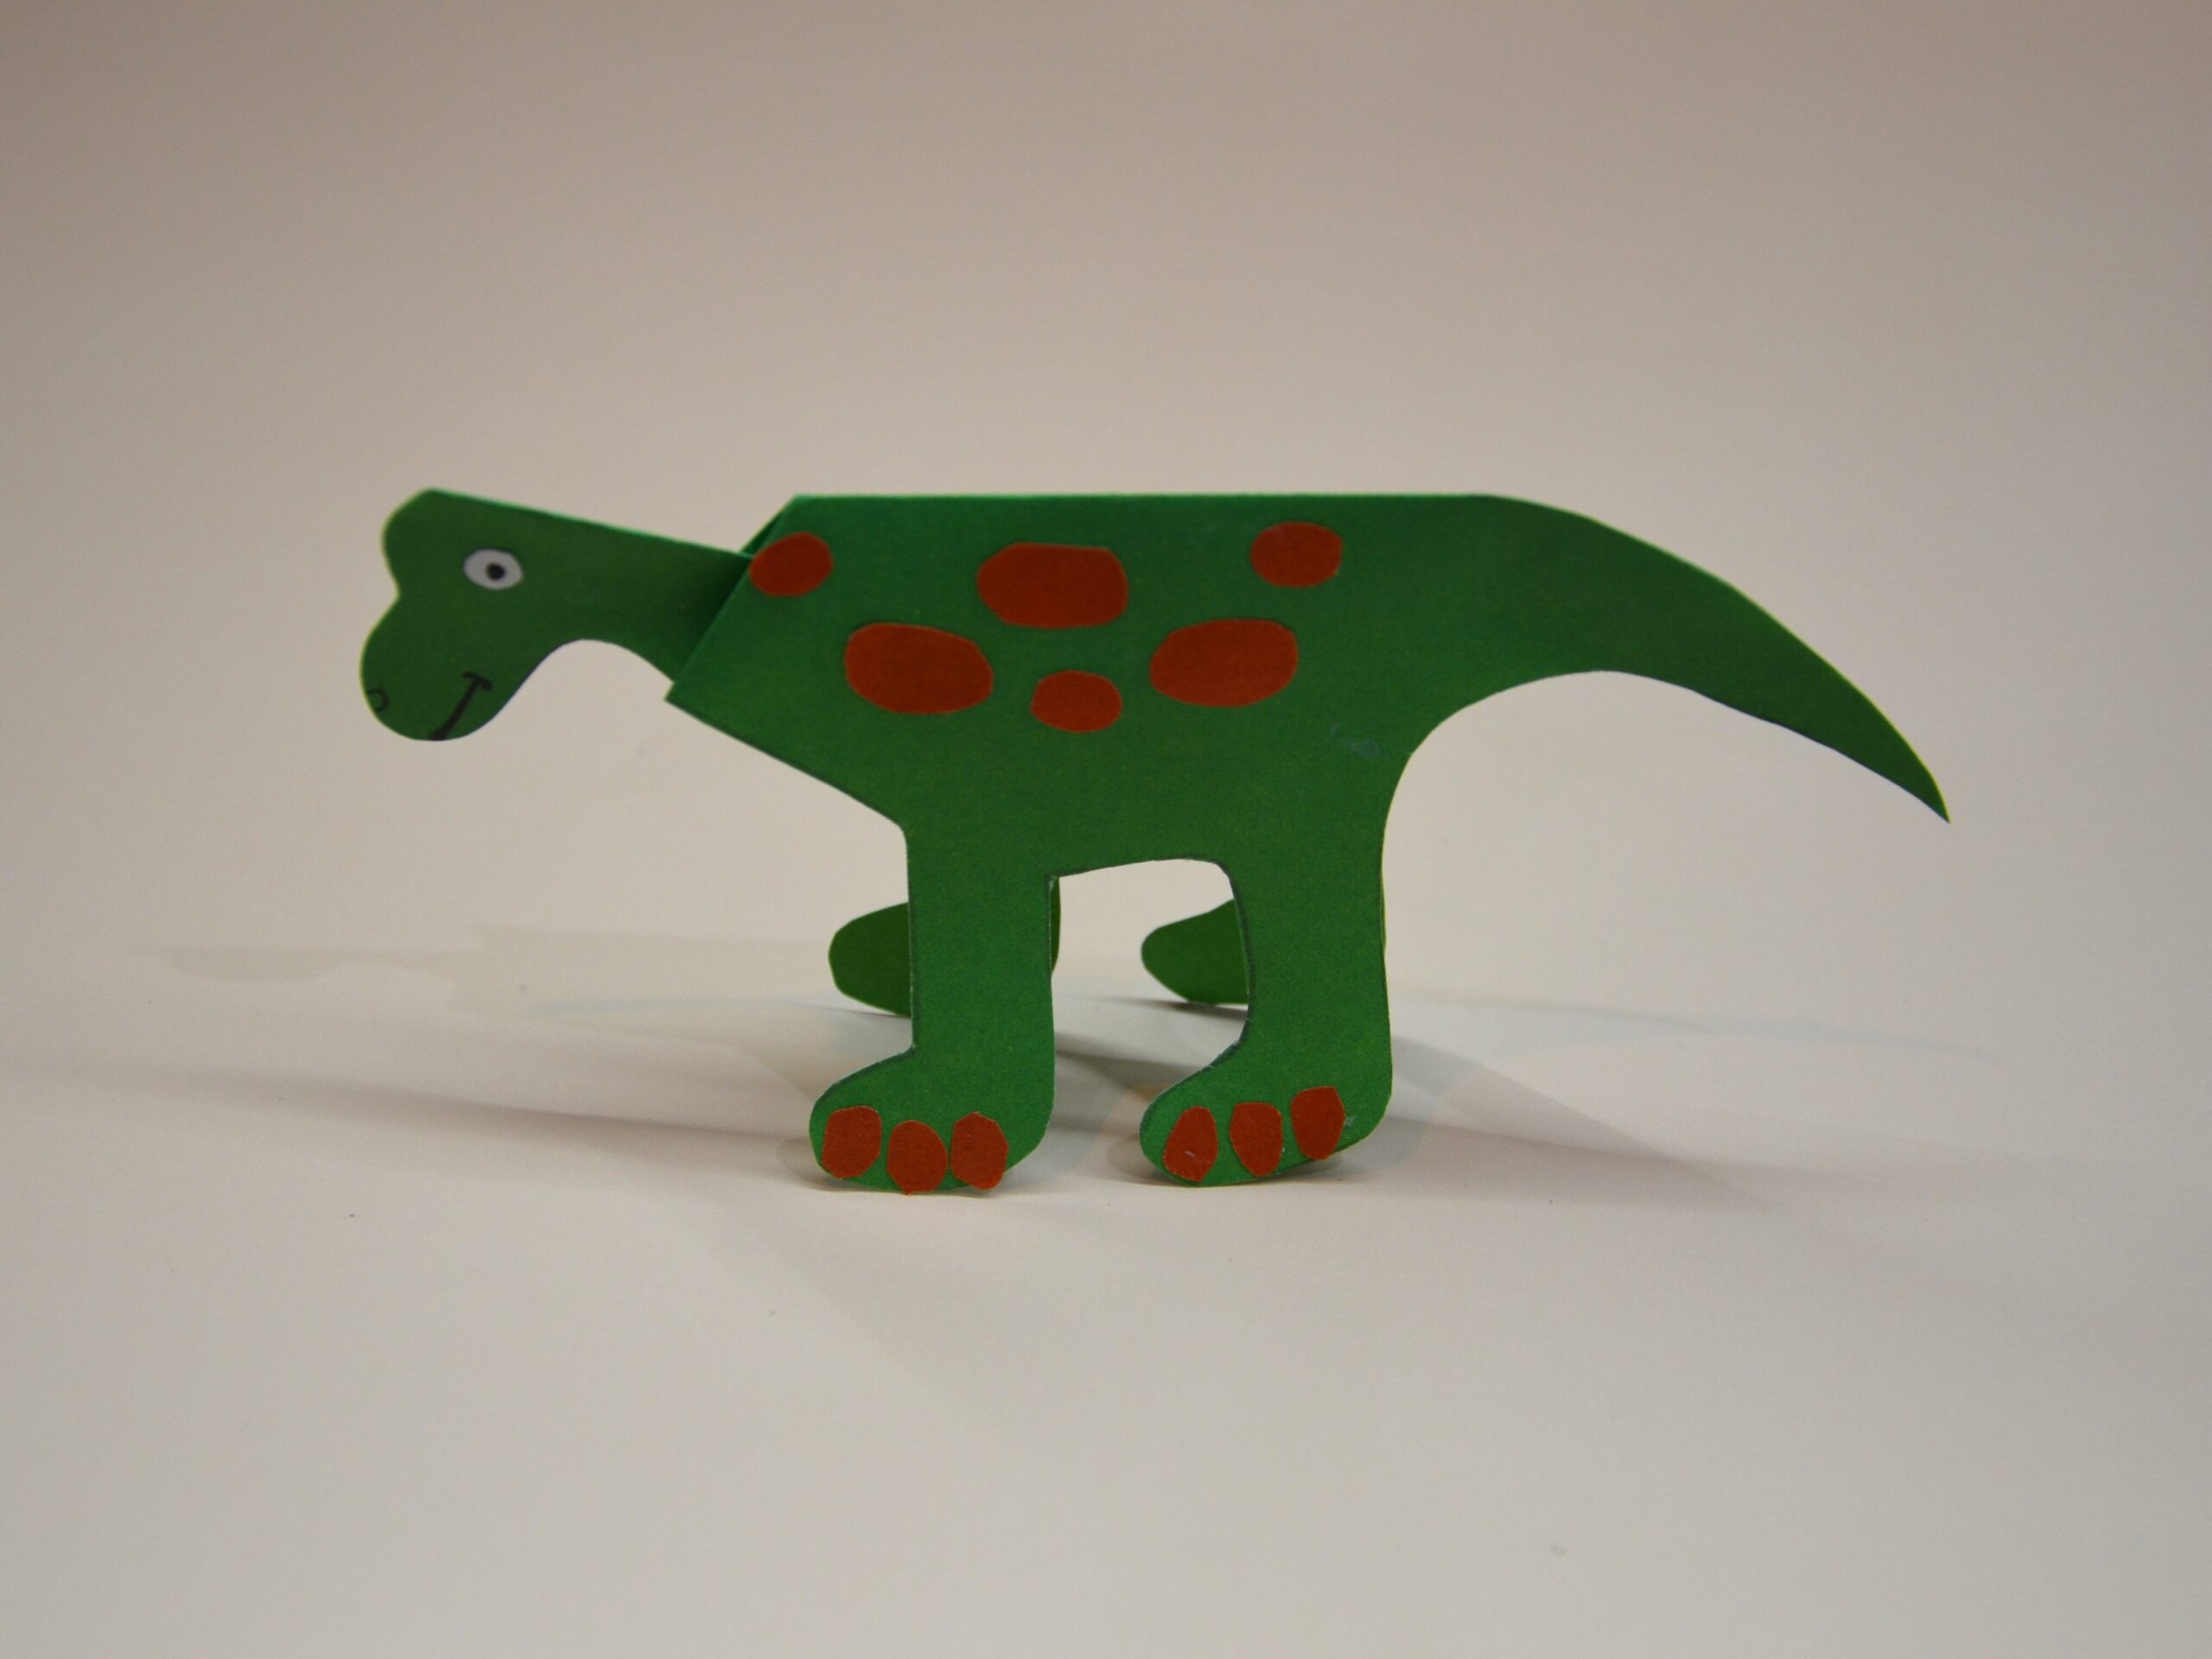 Как сделать динозавра? Из лего, бумаги, пластилина и других материалов. Пошаговые инструкции с фото